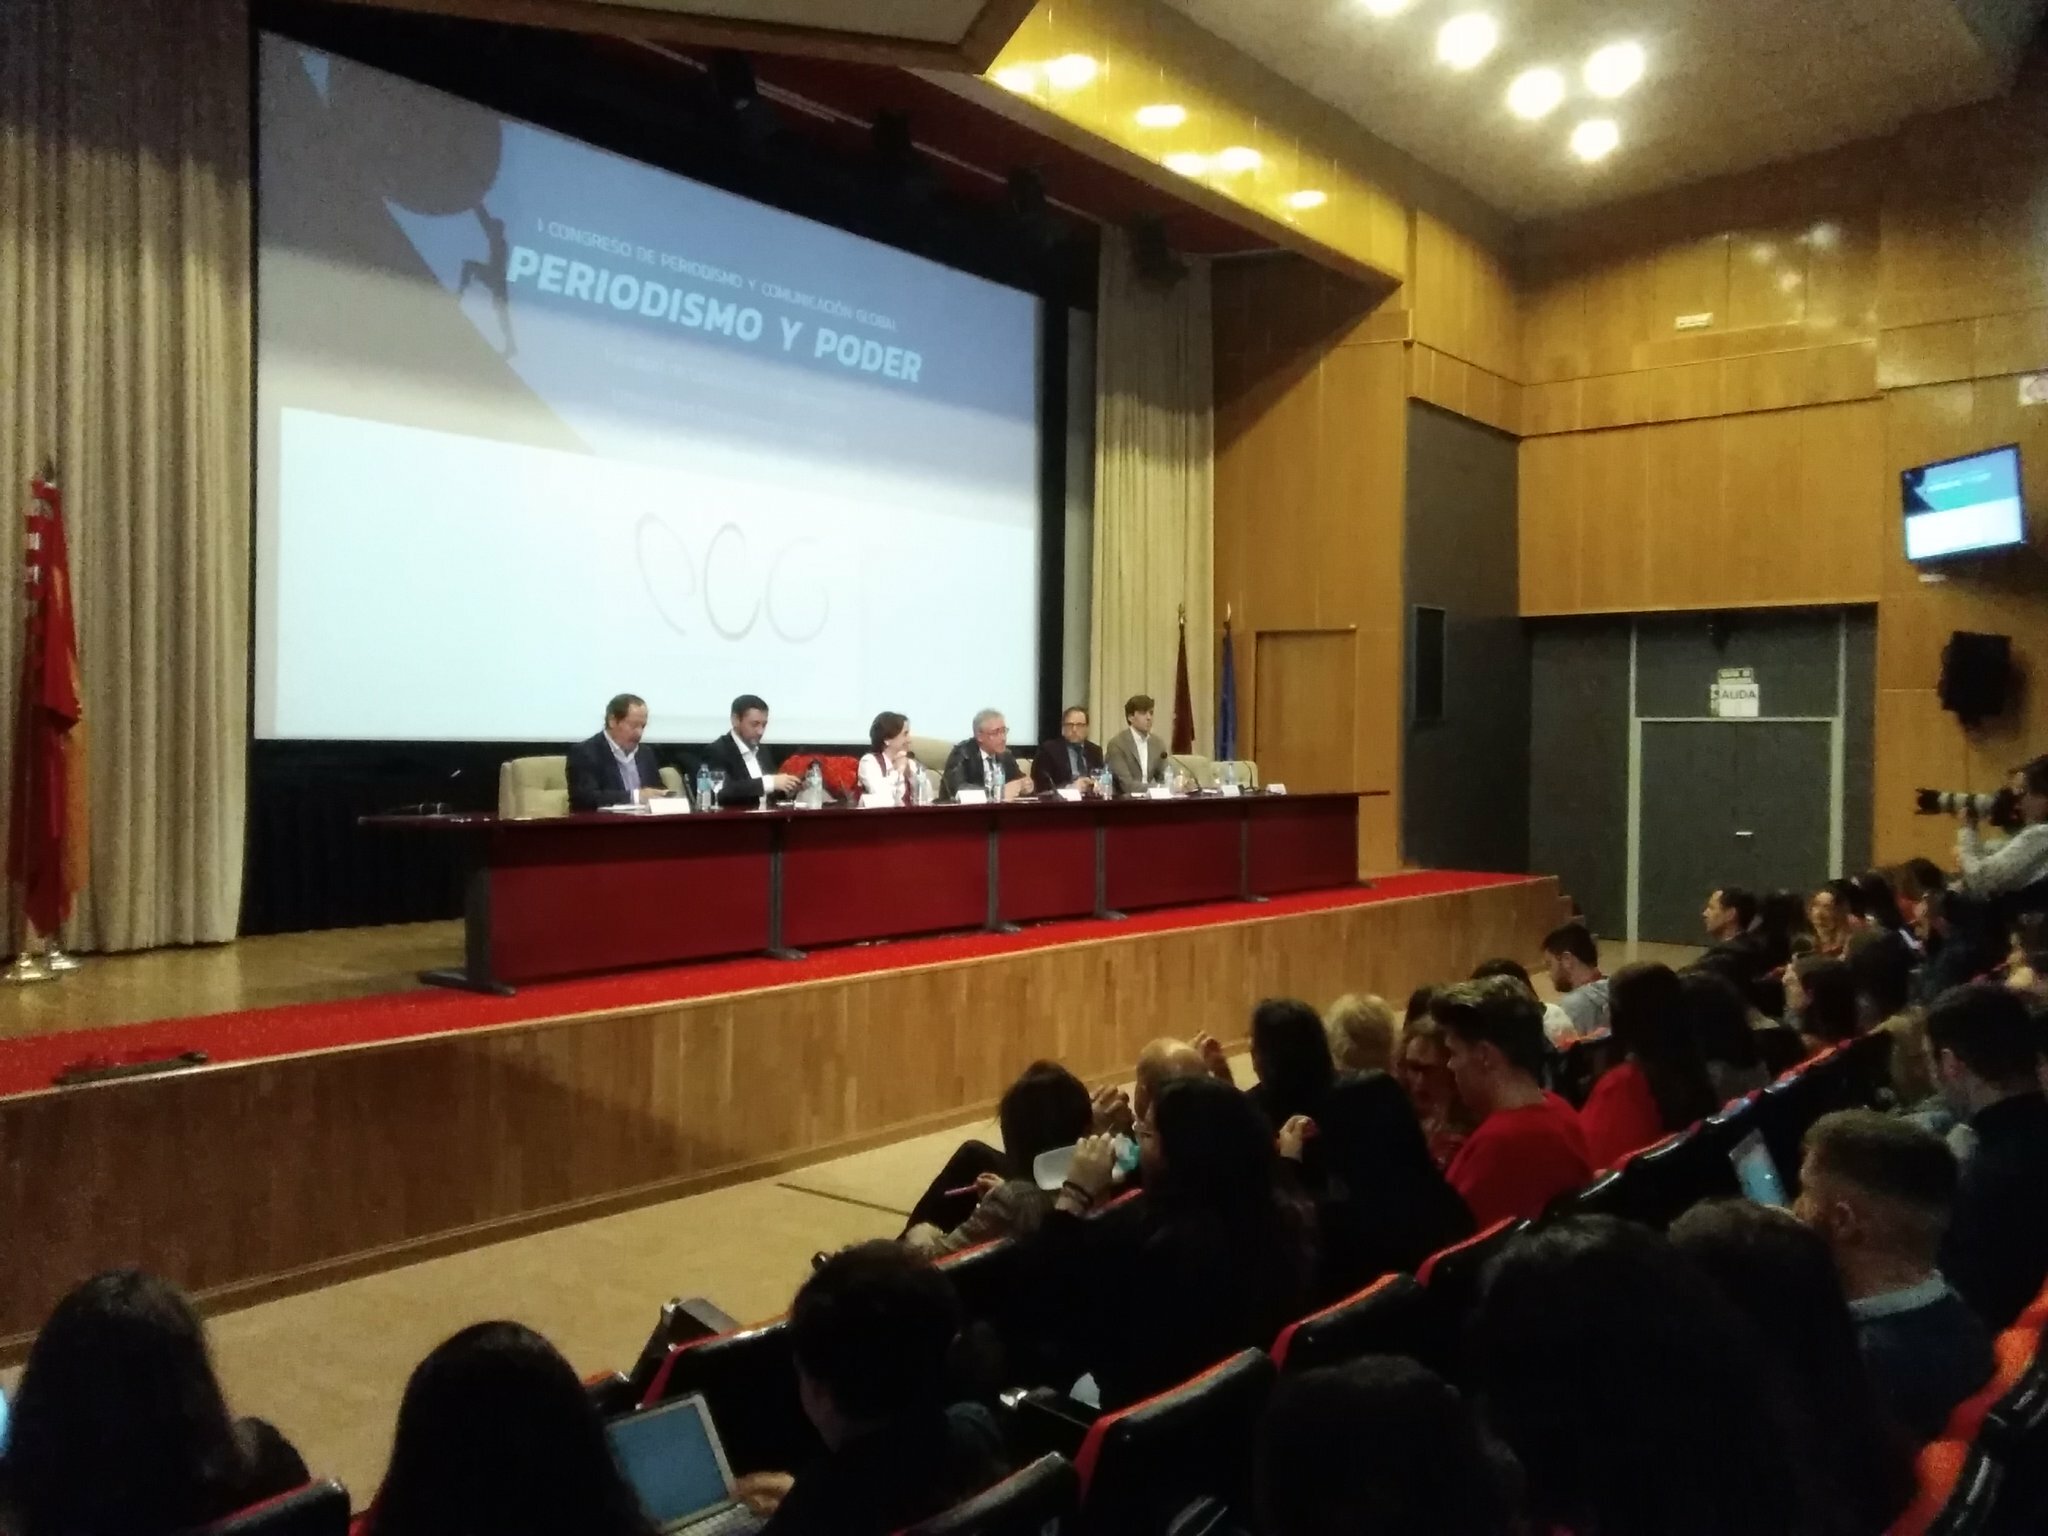 Iñaki Gabilondo inaugura el primer Congreso "Periodismo y Comunicación Global: Periodismo y Poder" 